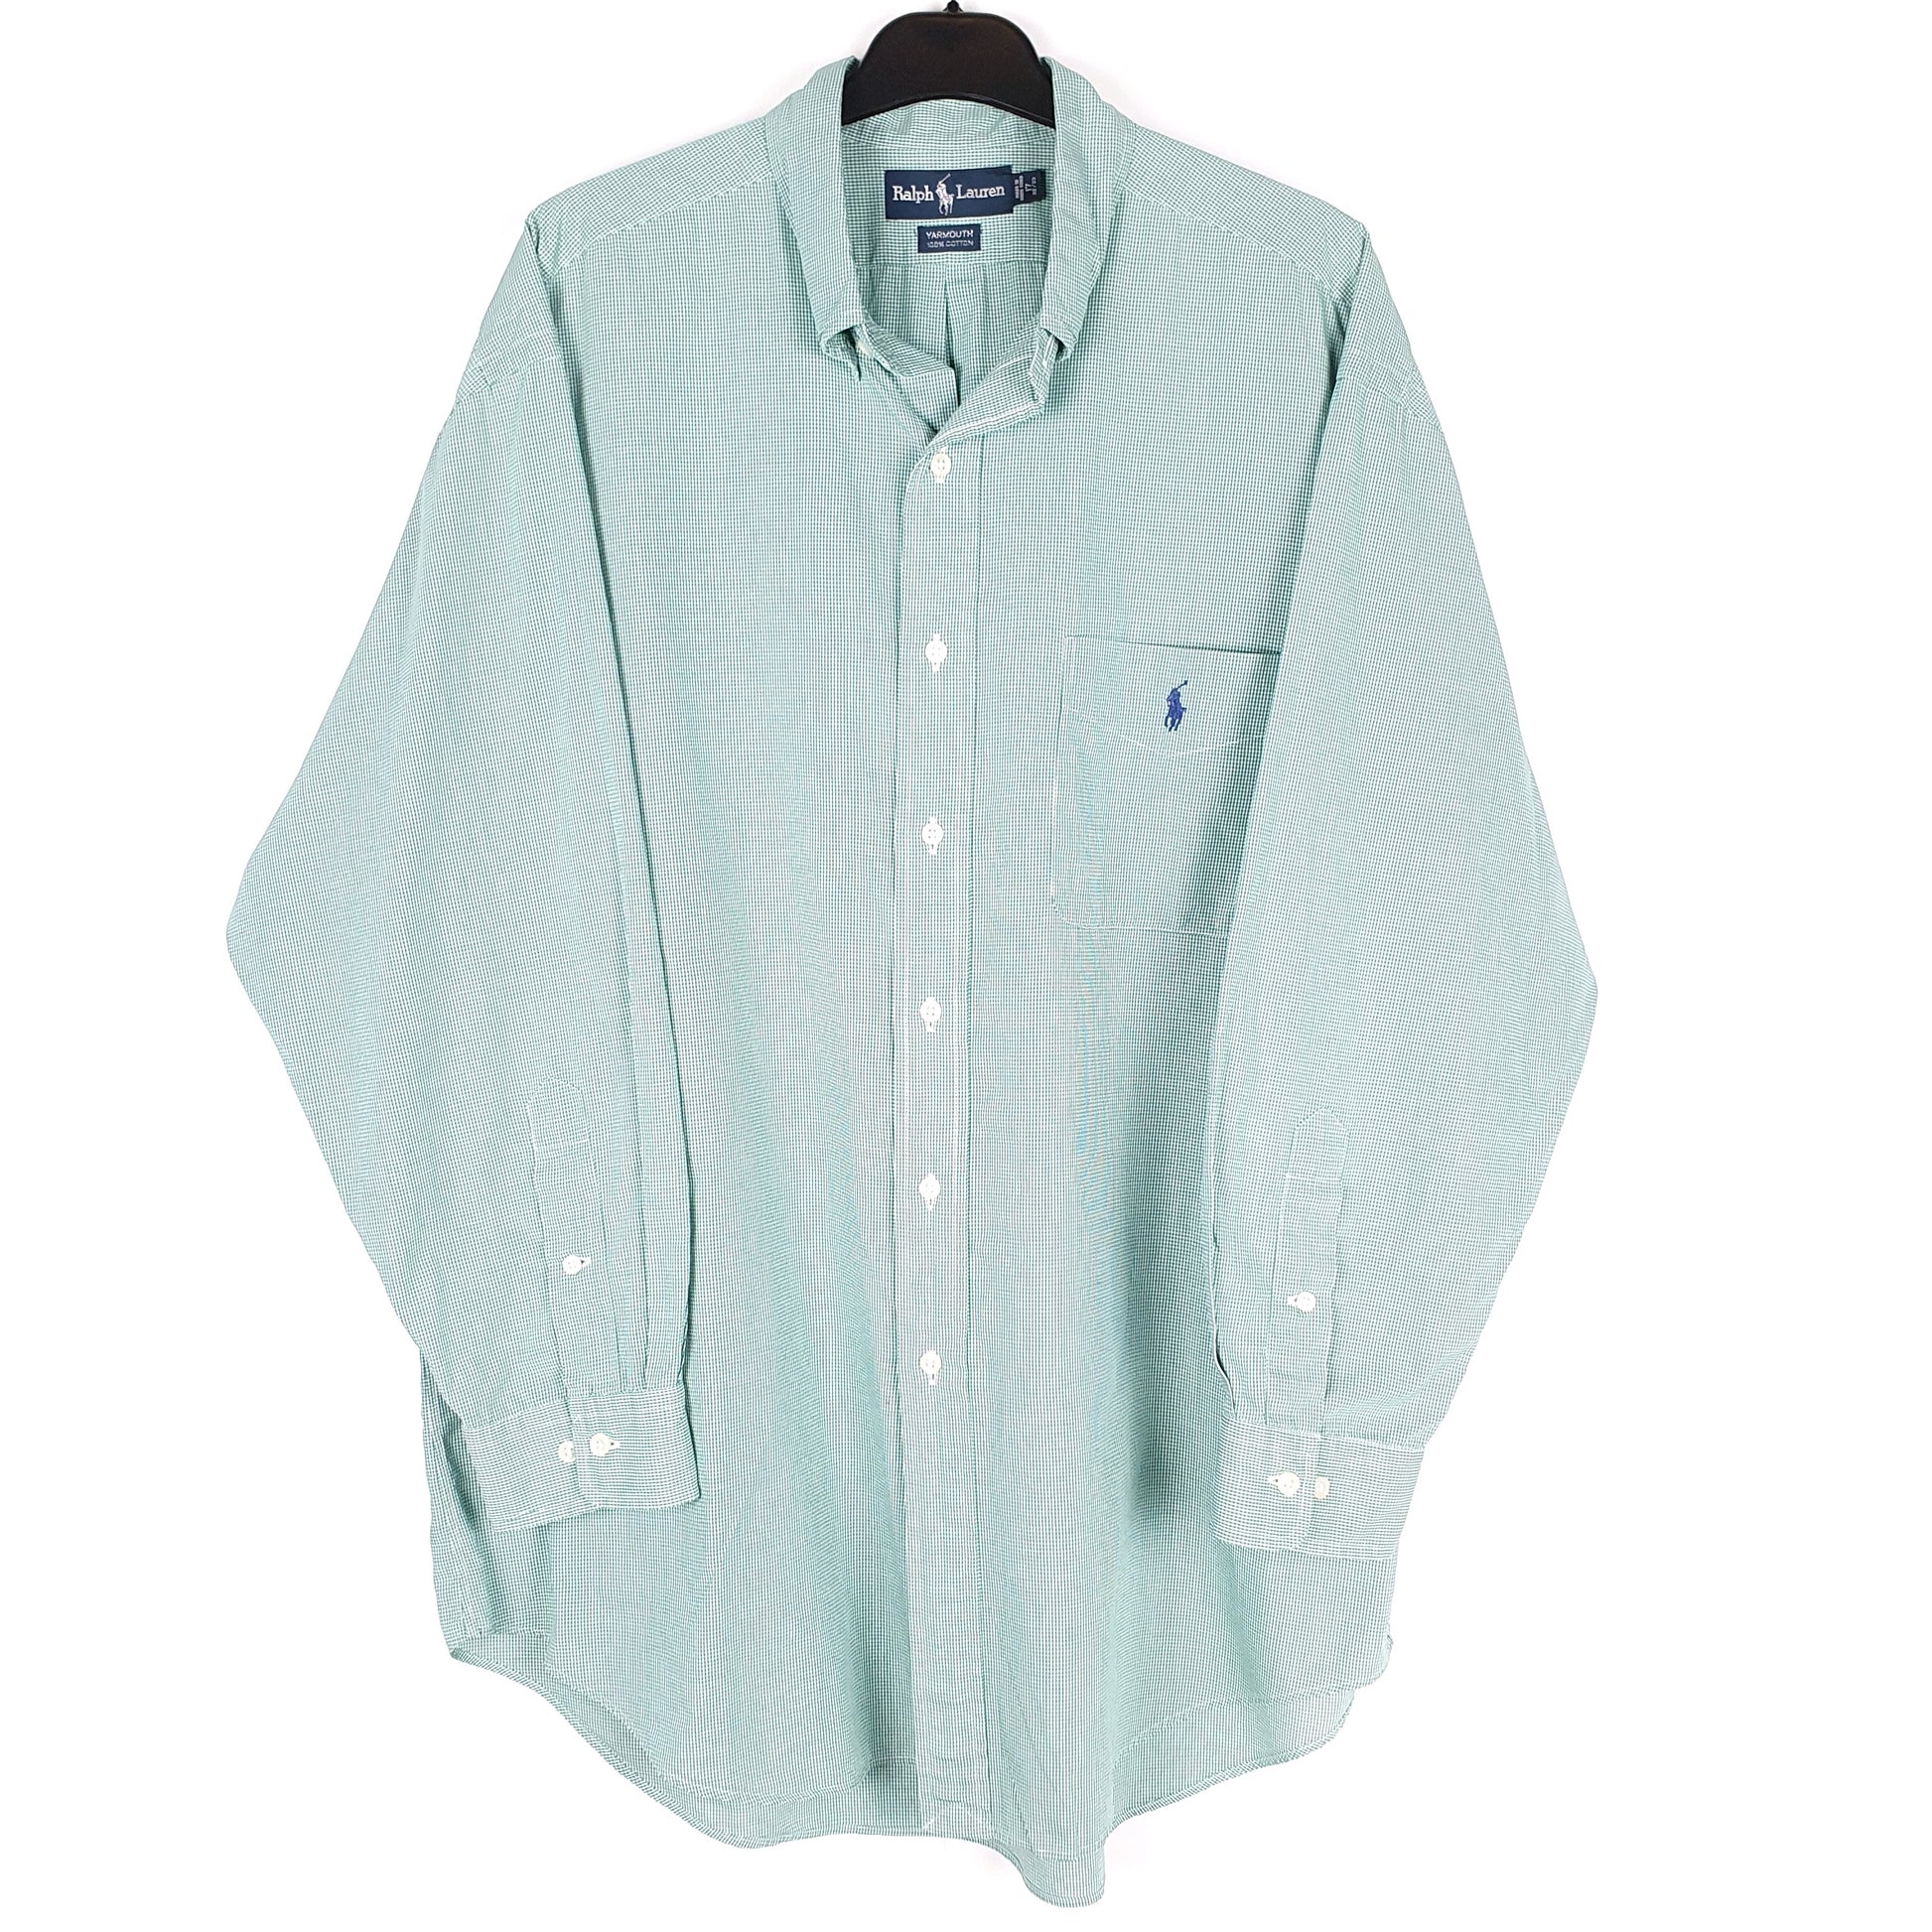 Green Polo Ralph Lauren Long Sleeve Shirt